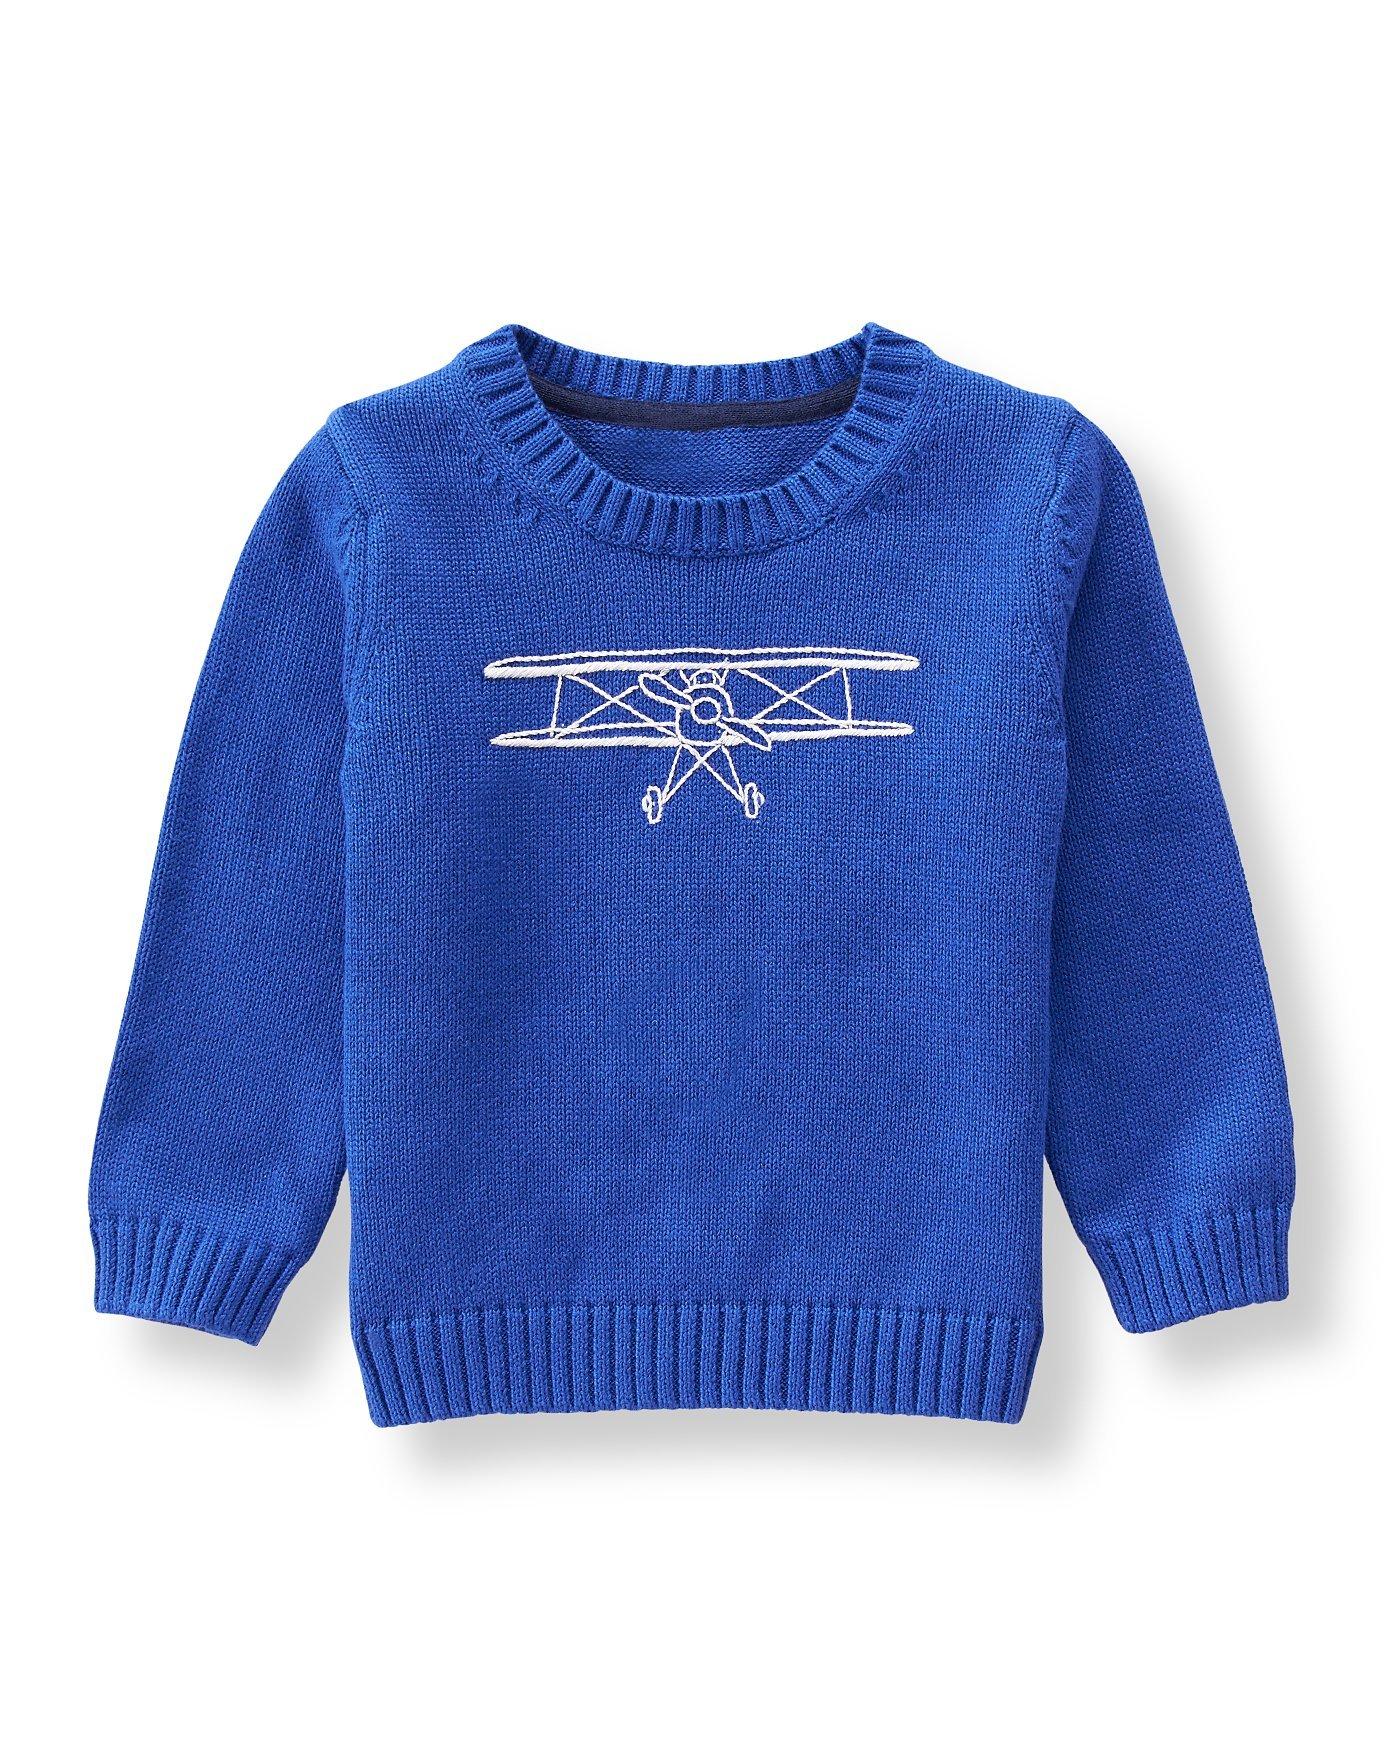 Boy True Blue Plane Sweater by Janie and Jack